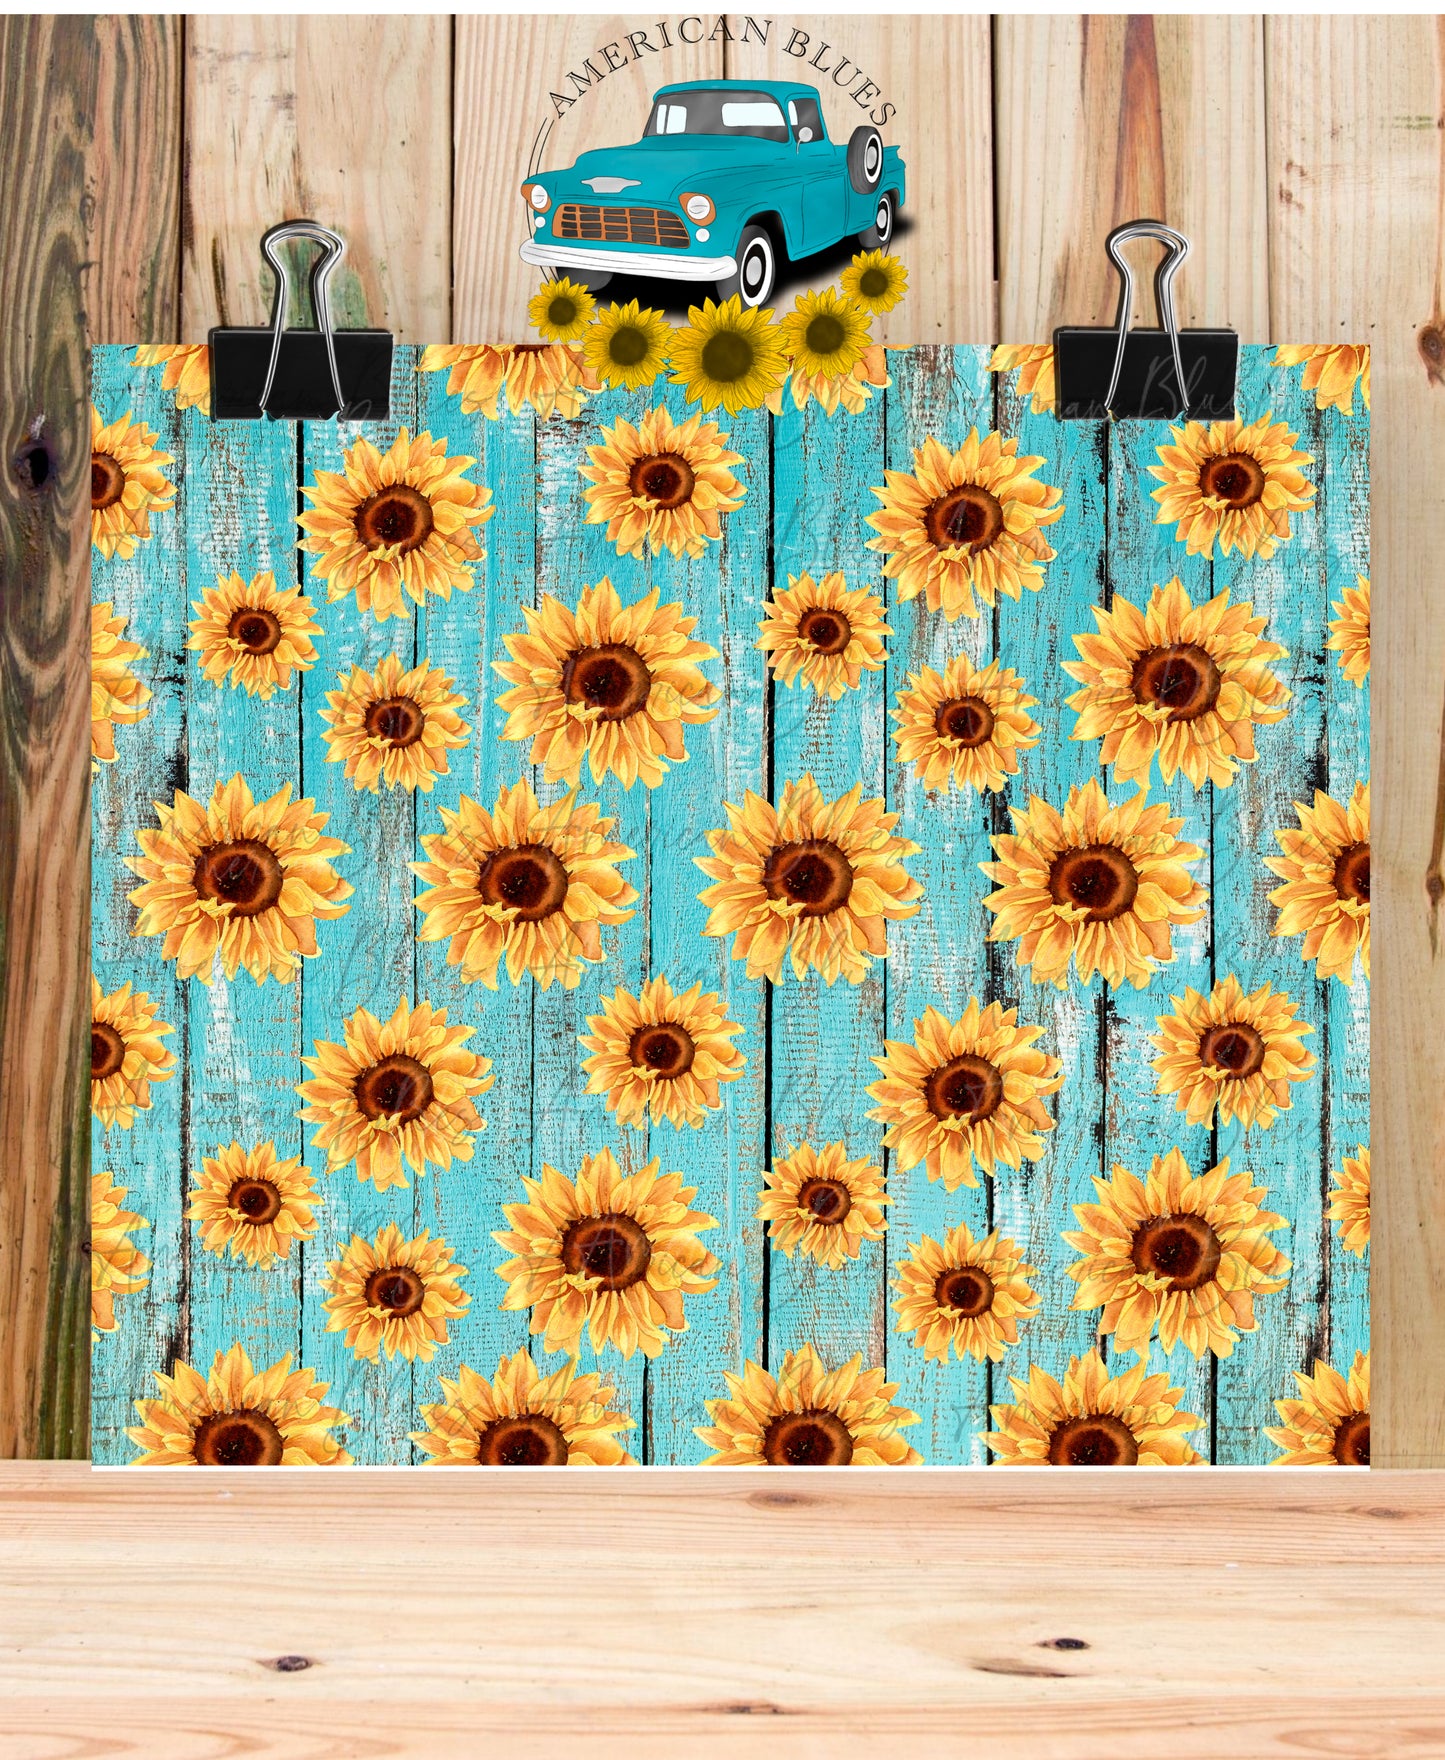 Sunflowers & Barn wood seamless pattern